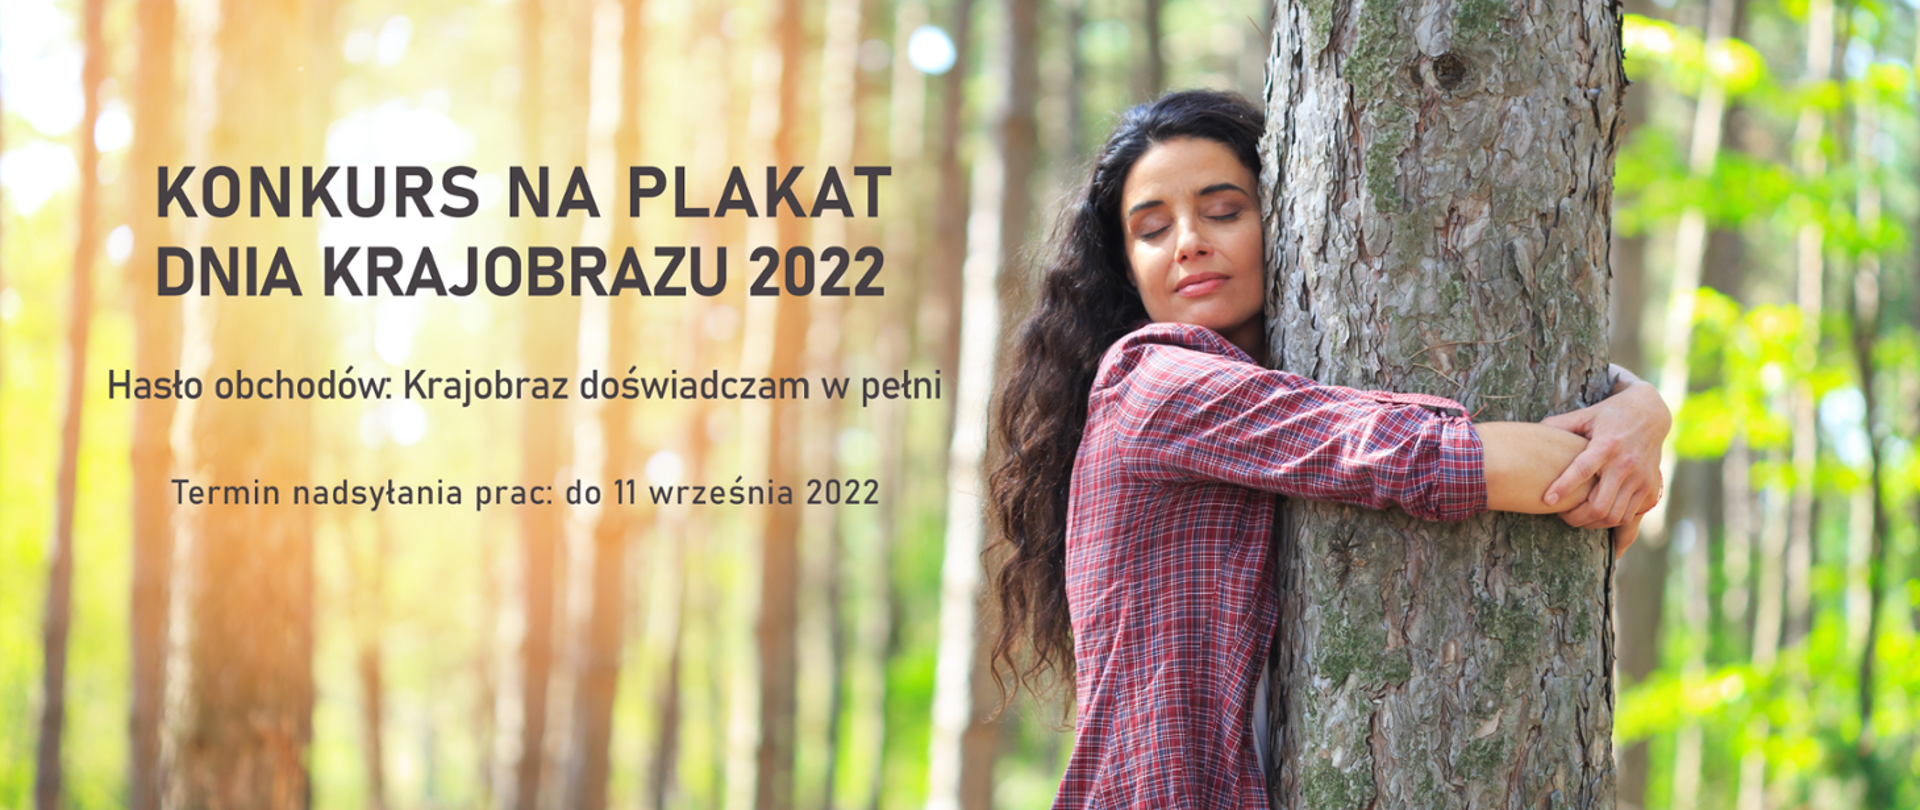 W tle las. Na pierwszym planie kobieta z długimi włosami, w koszuli w kratę. Napis informujący o konkursice na plakat Dnia Krajobrazu 2022. Wyznaczony termin: 11 września 2022 r.